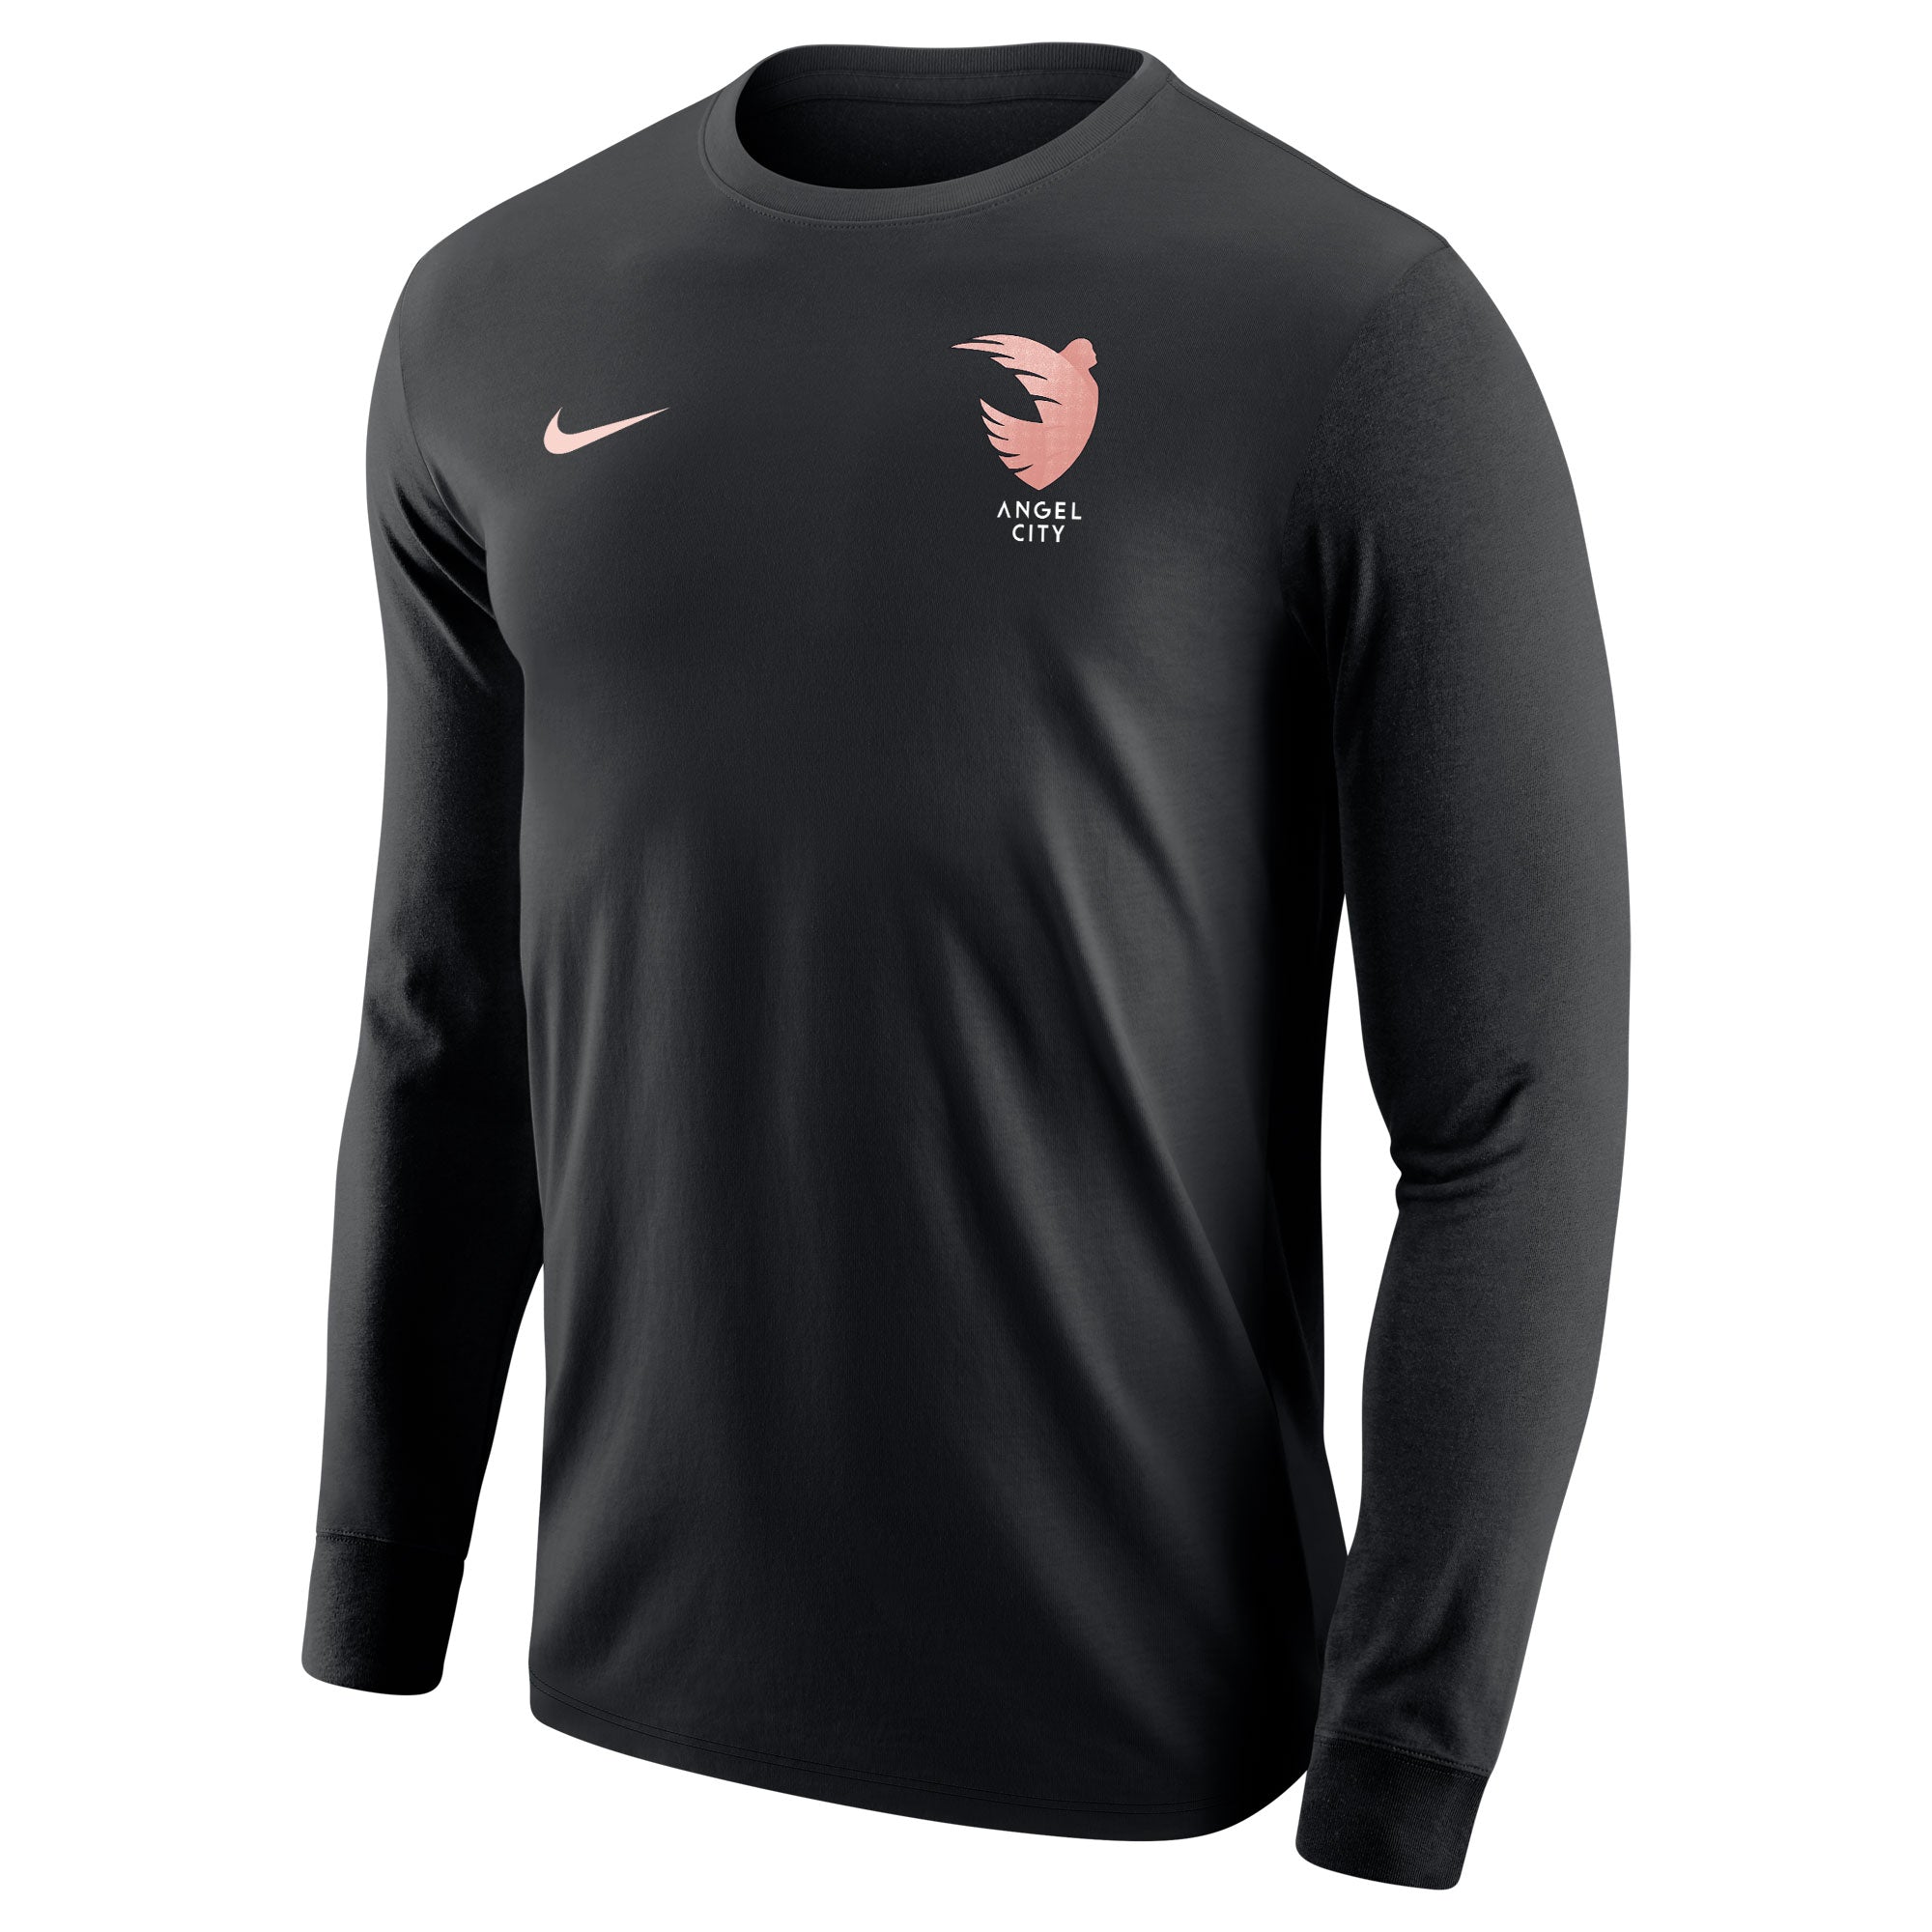 Angel City Nike Unisex Sol Rosa Emblema Negro Camiseta de manga larga